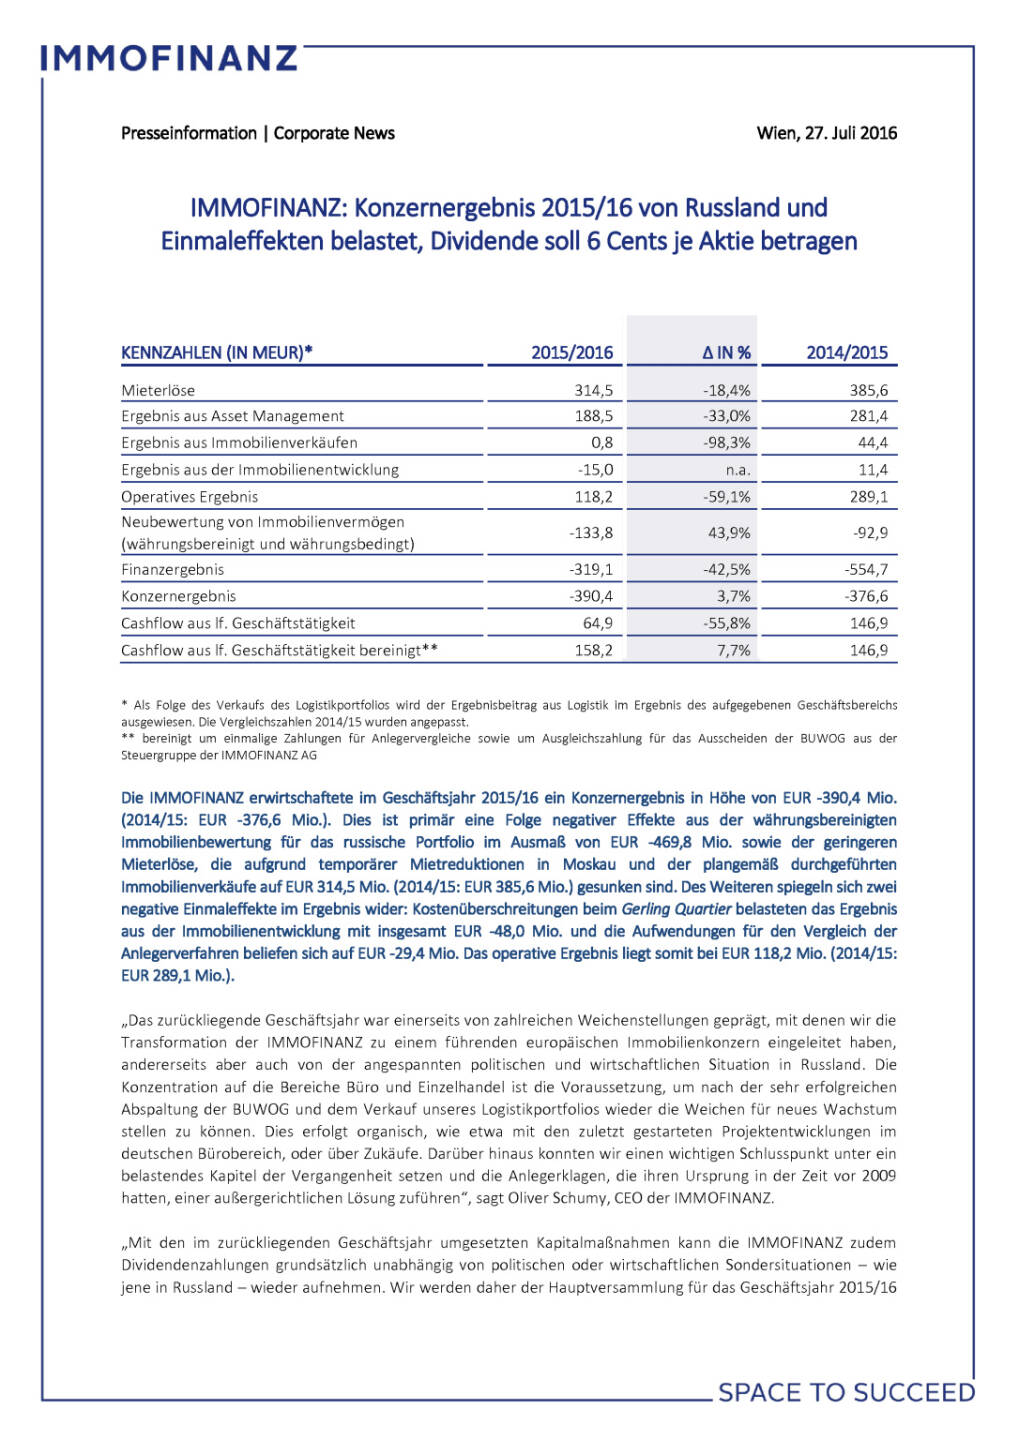 Immofinanz: Konzernergebnis 2015/16 von Russland und Einmaleffekten belastet, Seite 1/4, komplettes Dokument unter http://boerse-social.com/static/uploads/file_1509_immofinanz_konzernergebnis_201516_von_russland_und_einmaleffekten_belastet.pdf